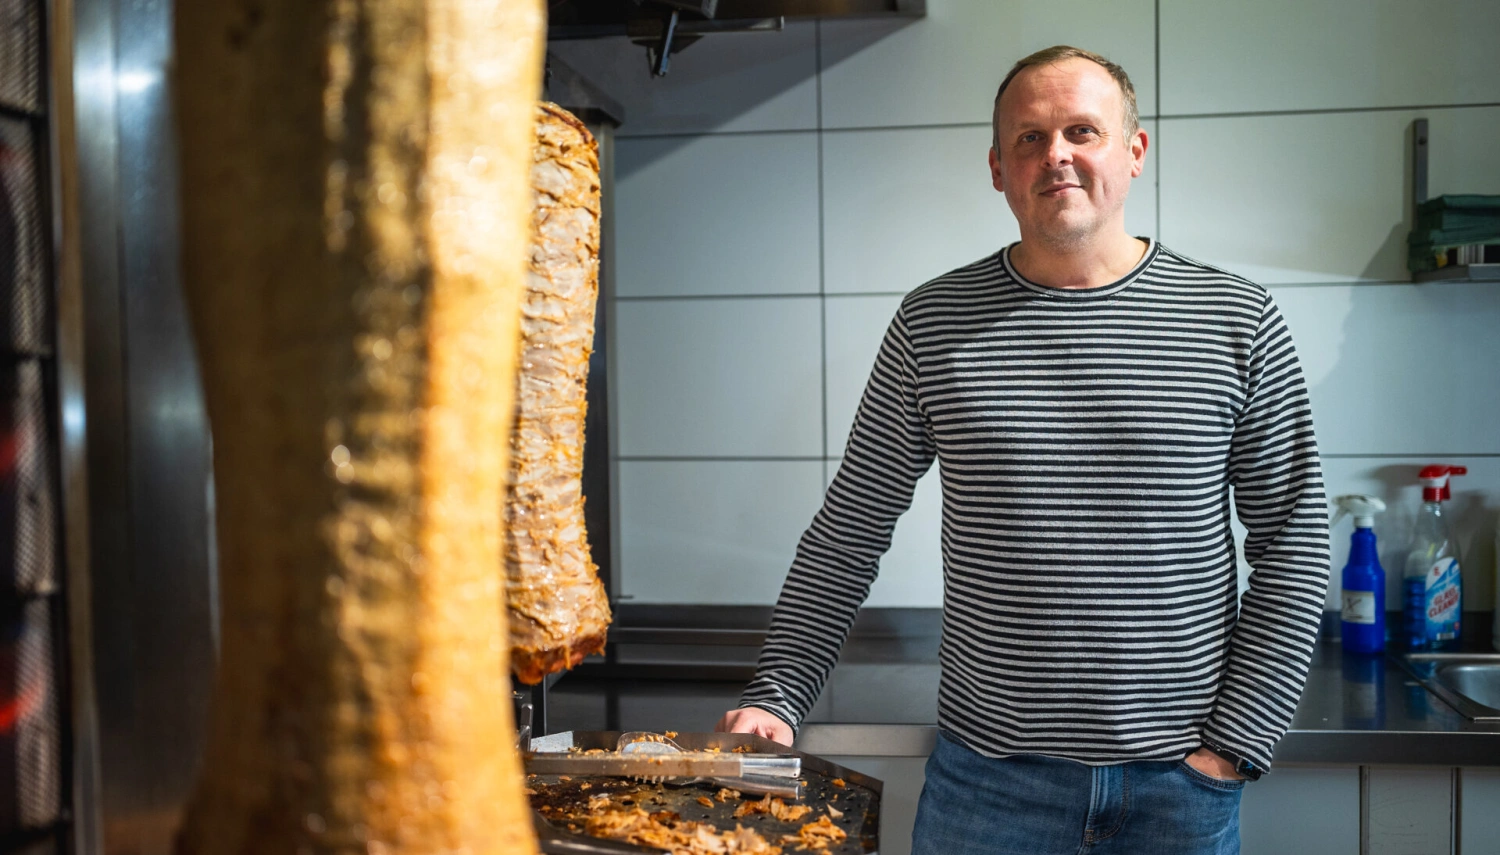 Prievidžan má s kebabom miliónové tržby. Ladil ho štyri roky, teraz zásobuje celé Slovensko